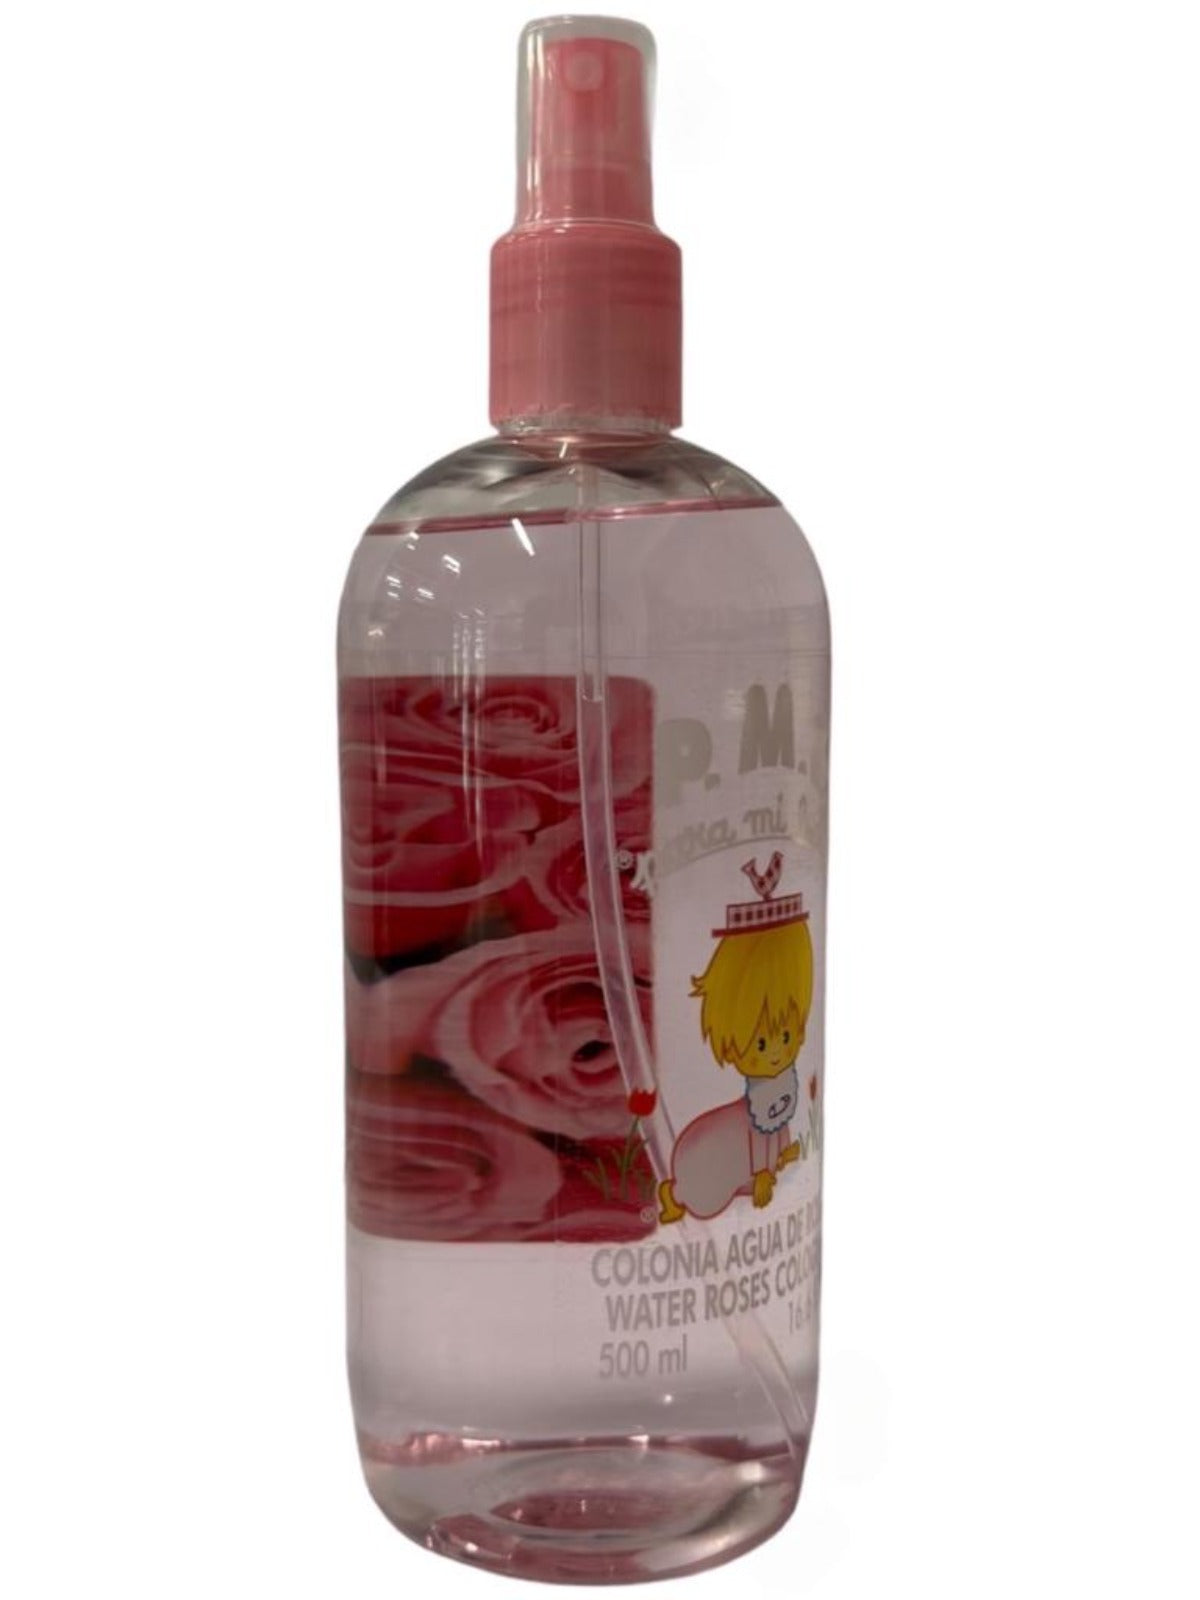 Para Mi Bebe Colonia Agua De Rosas Water Roses Cologne Spray 500ml